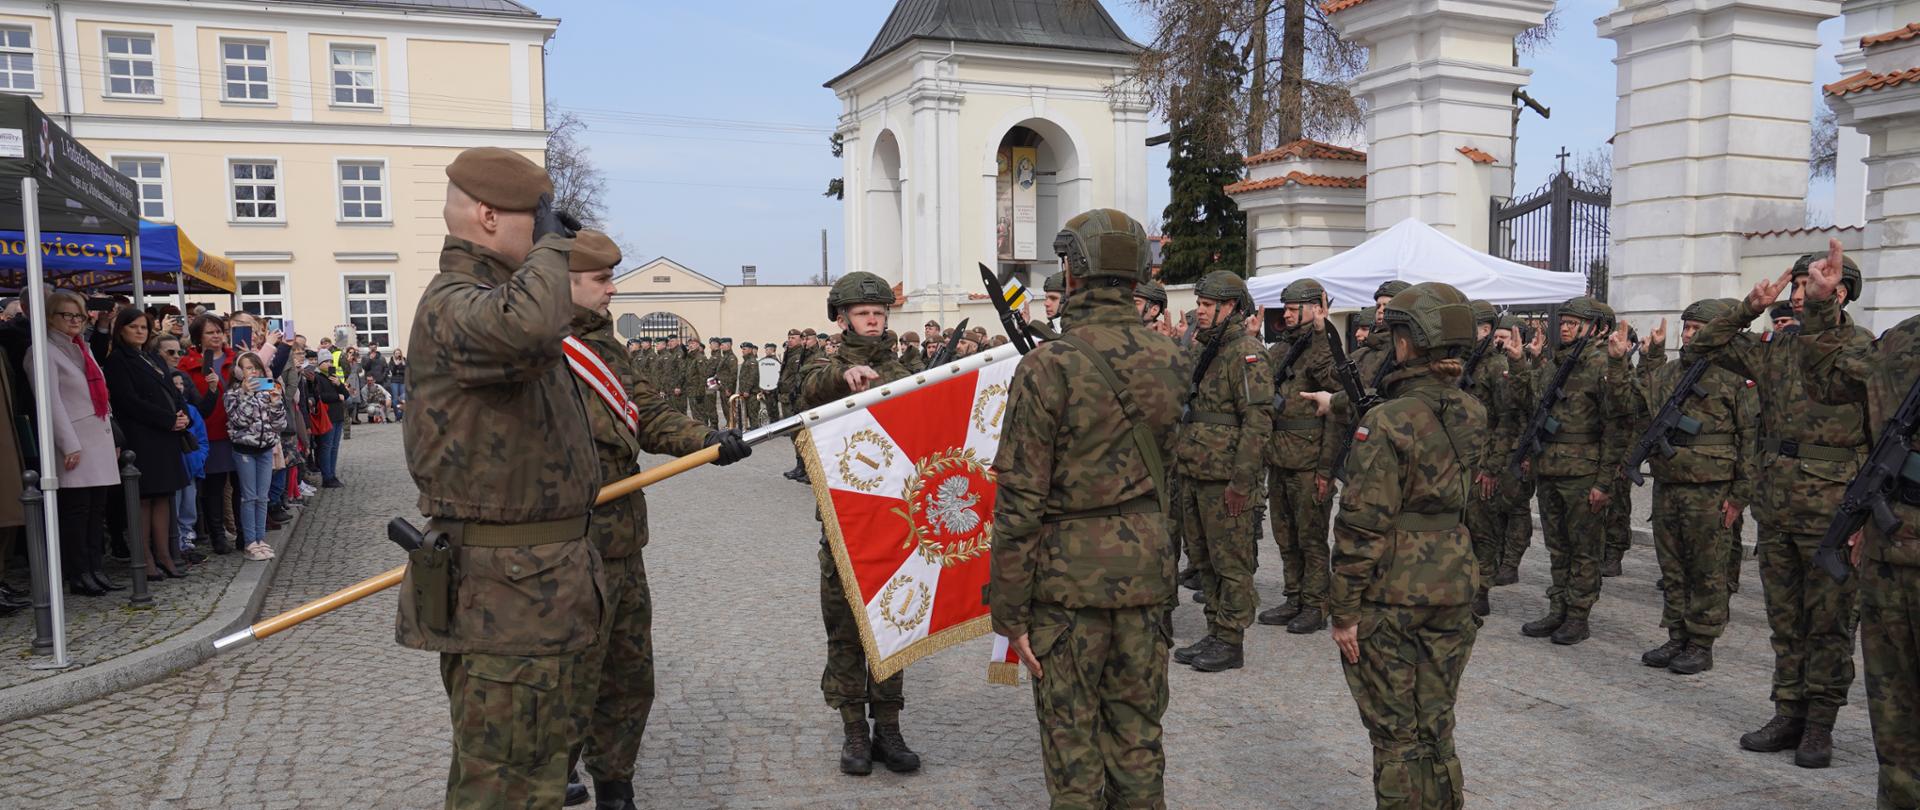 Terytorialsi złożyli przysięgę wojskową w Ciechanowcu